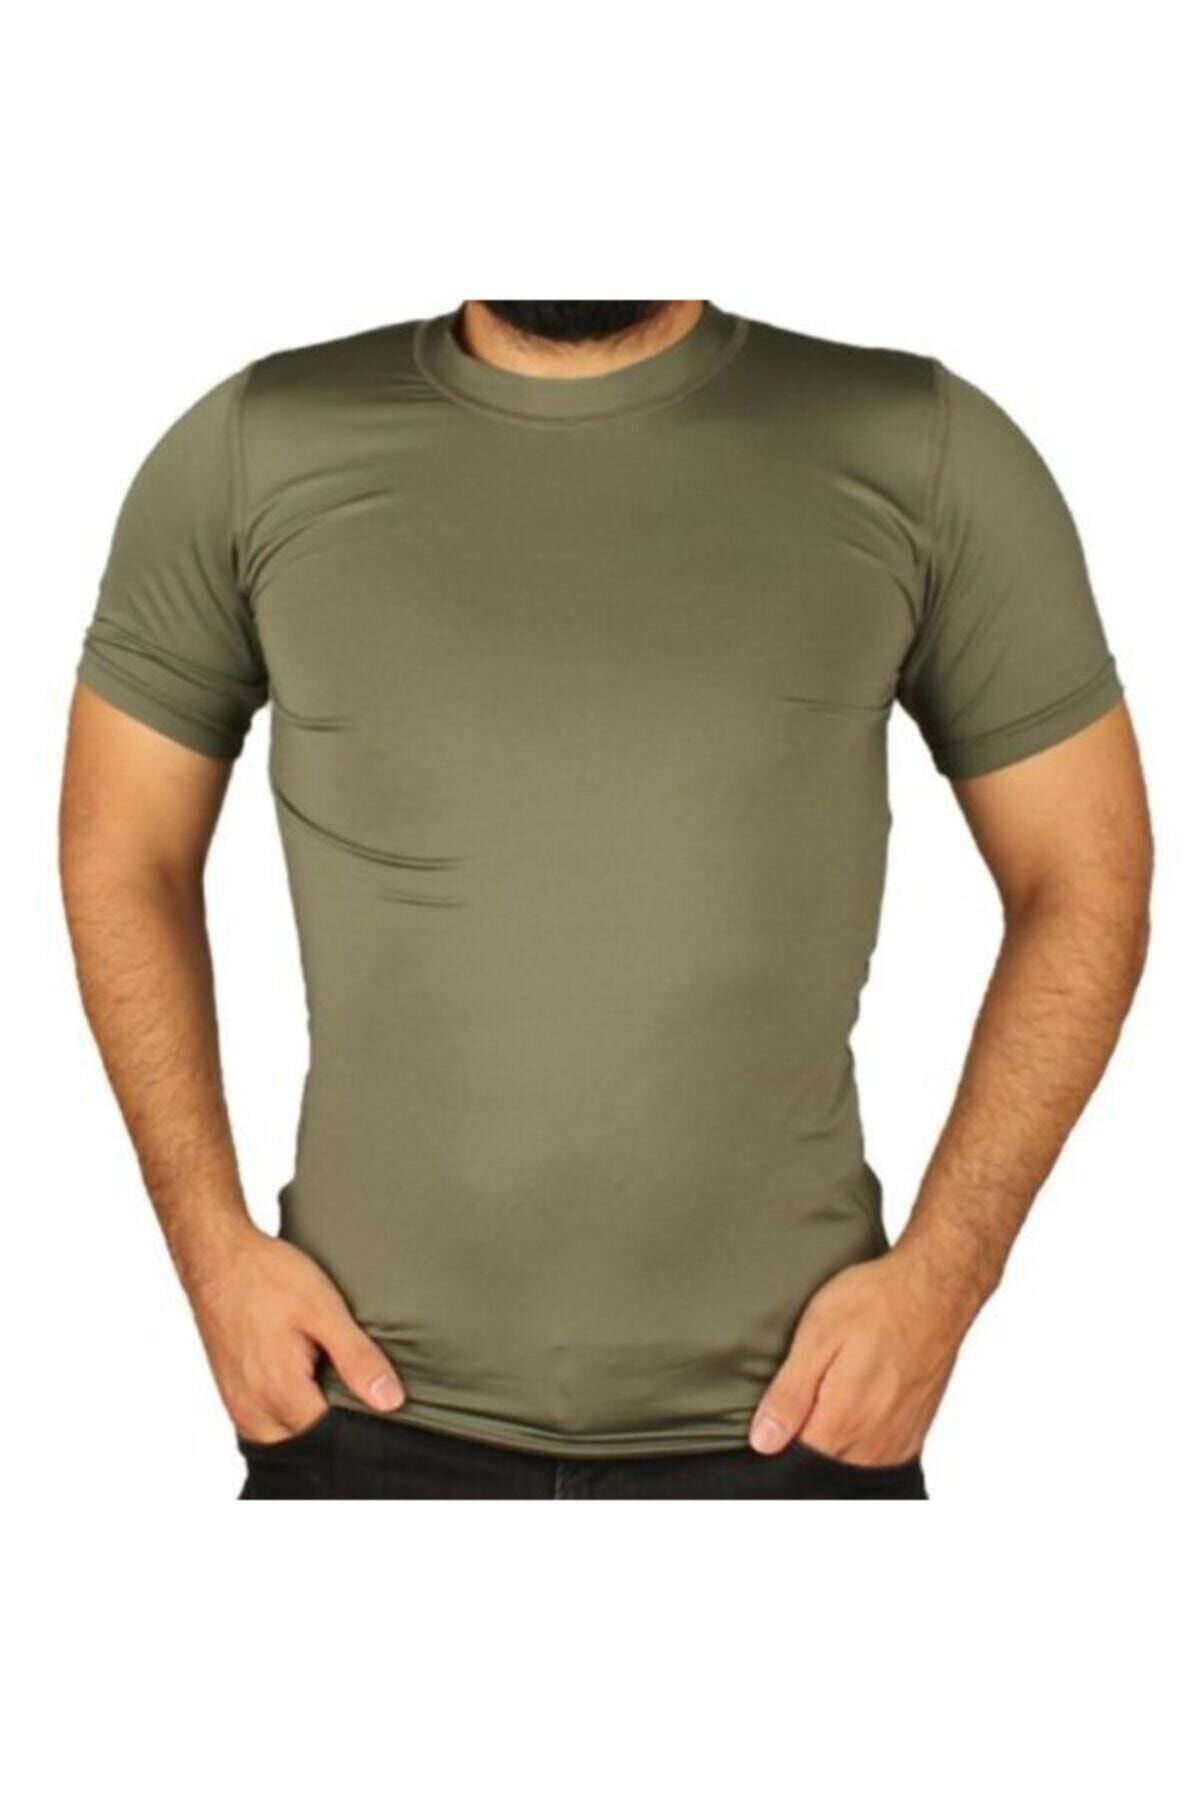 Silyon Askeri Giyim Erkek Haki Termal 4 Mevsim Mikrofiber Likralı Tişört